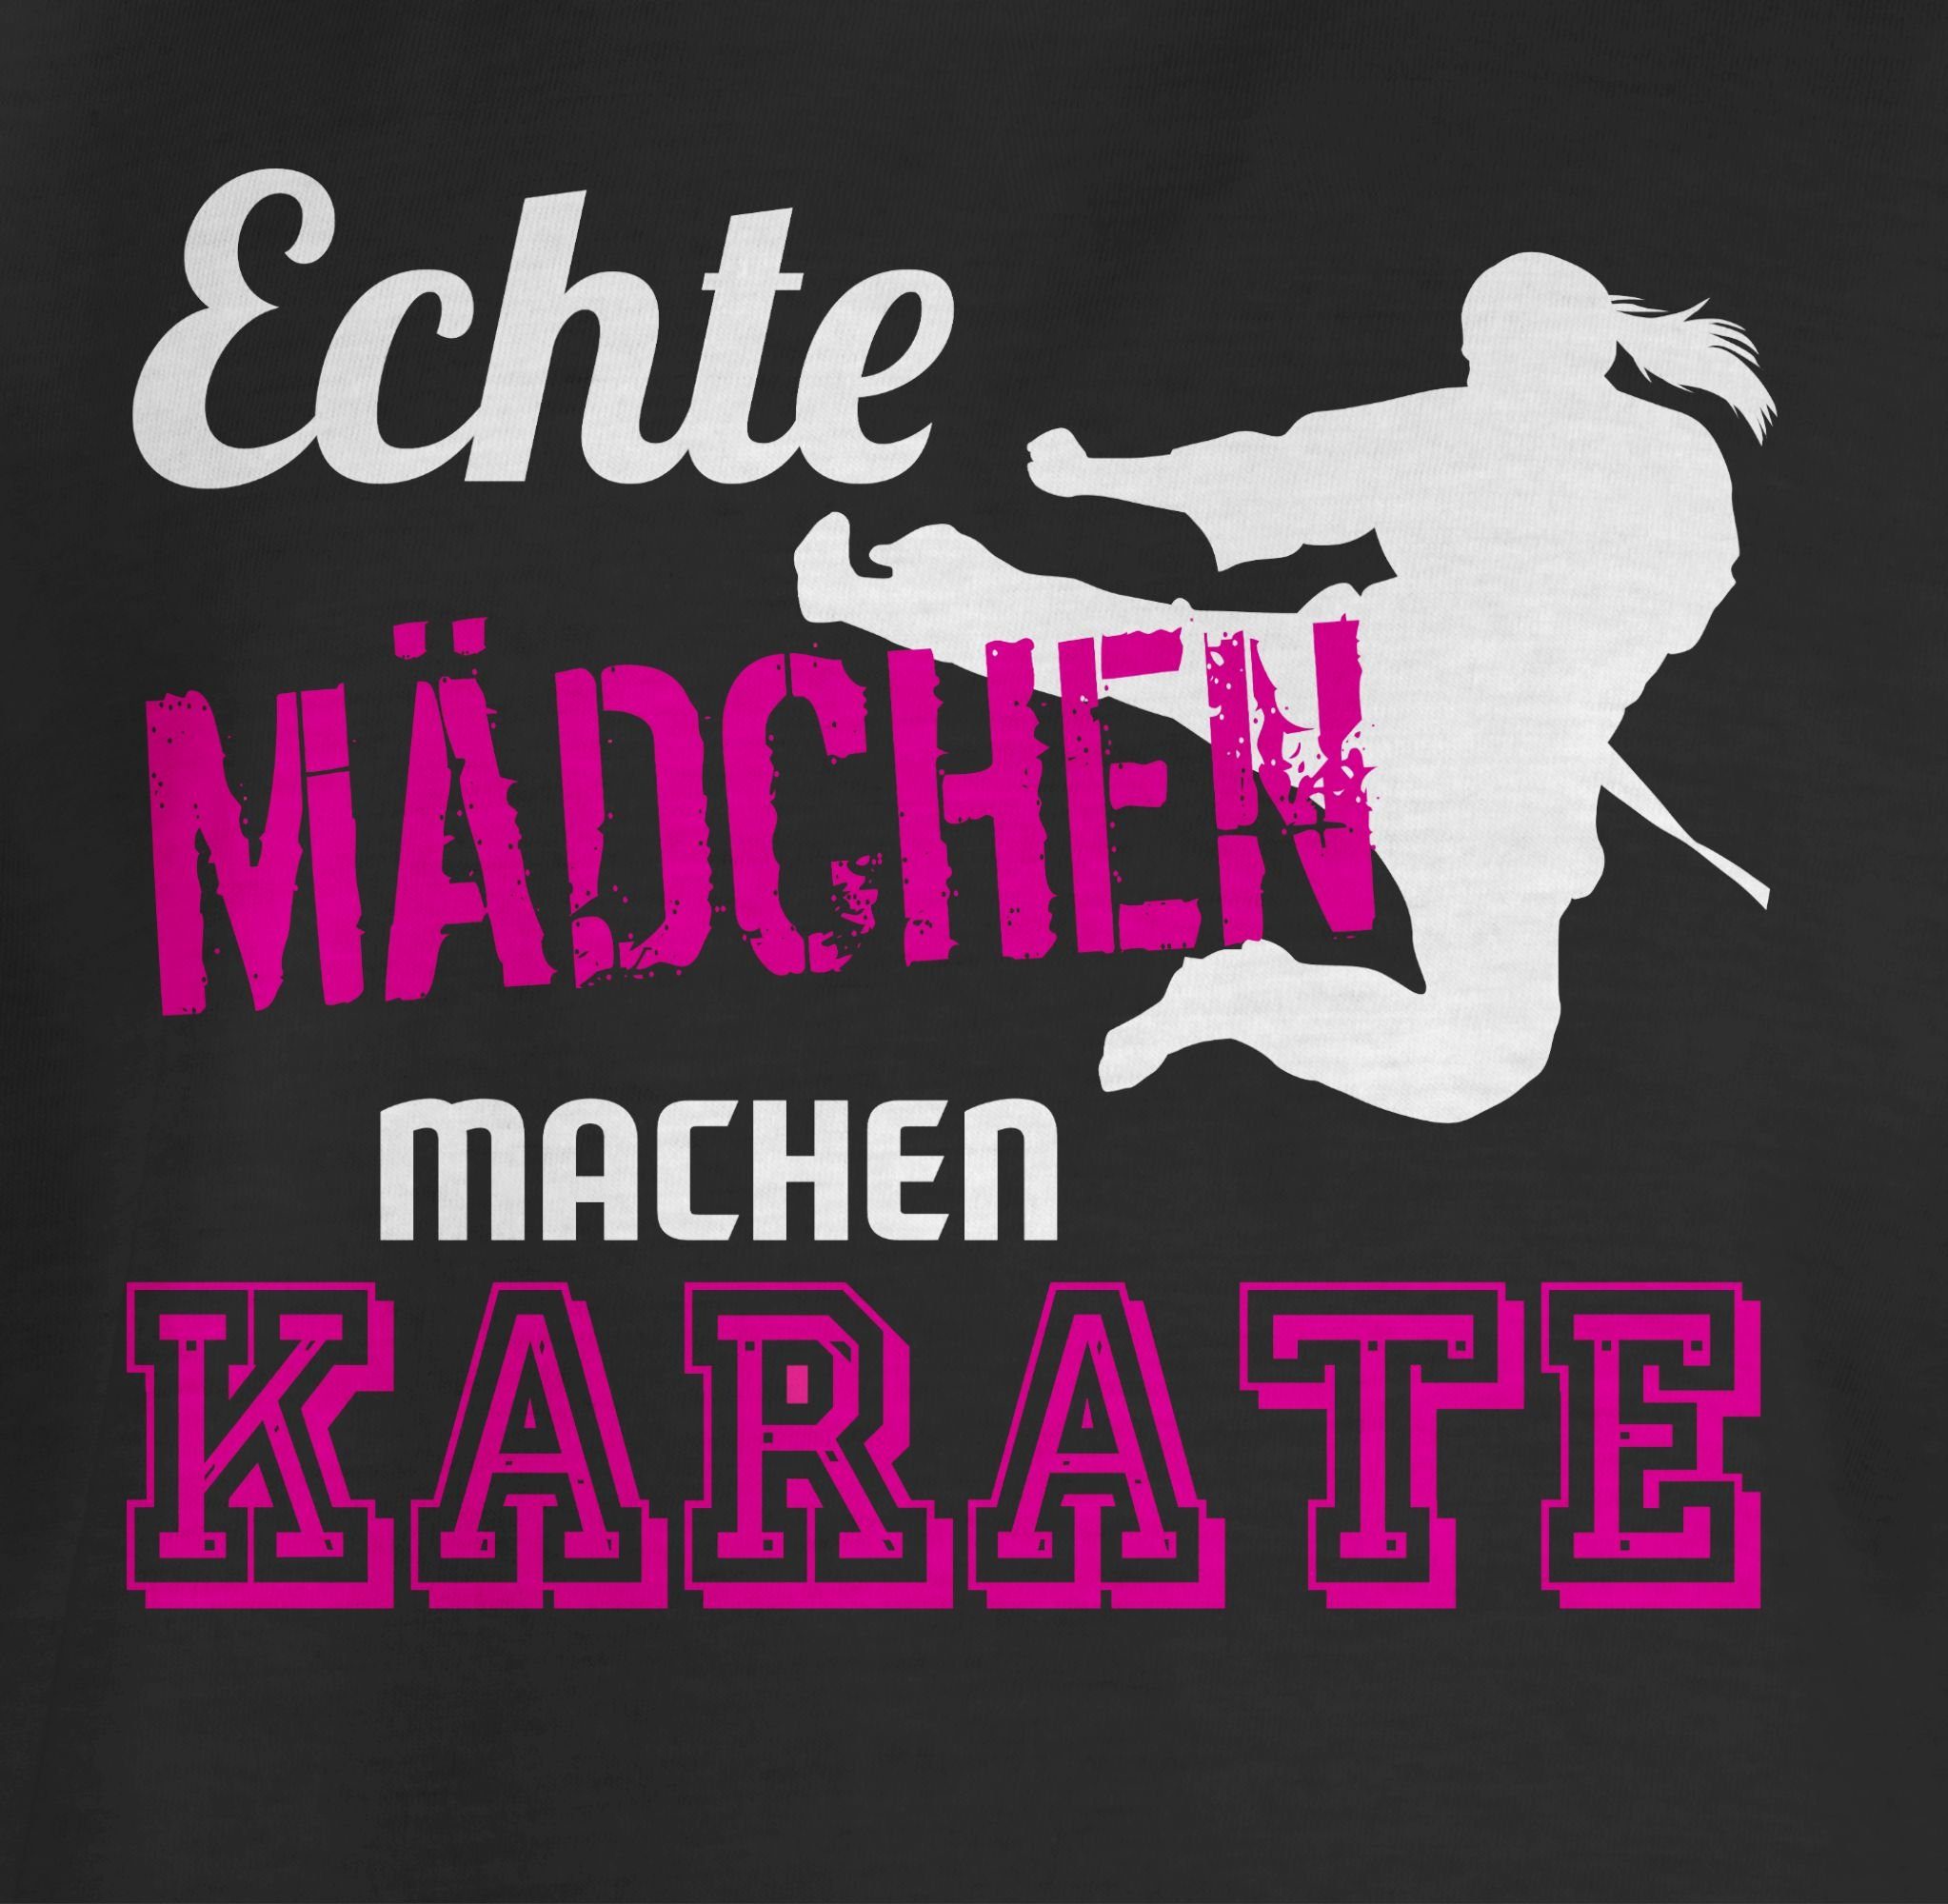 T-Shirt 1 Mädchen Schwarz Sport Kinder Karate Shirtracer machen Echte Kleidung